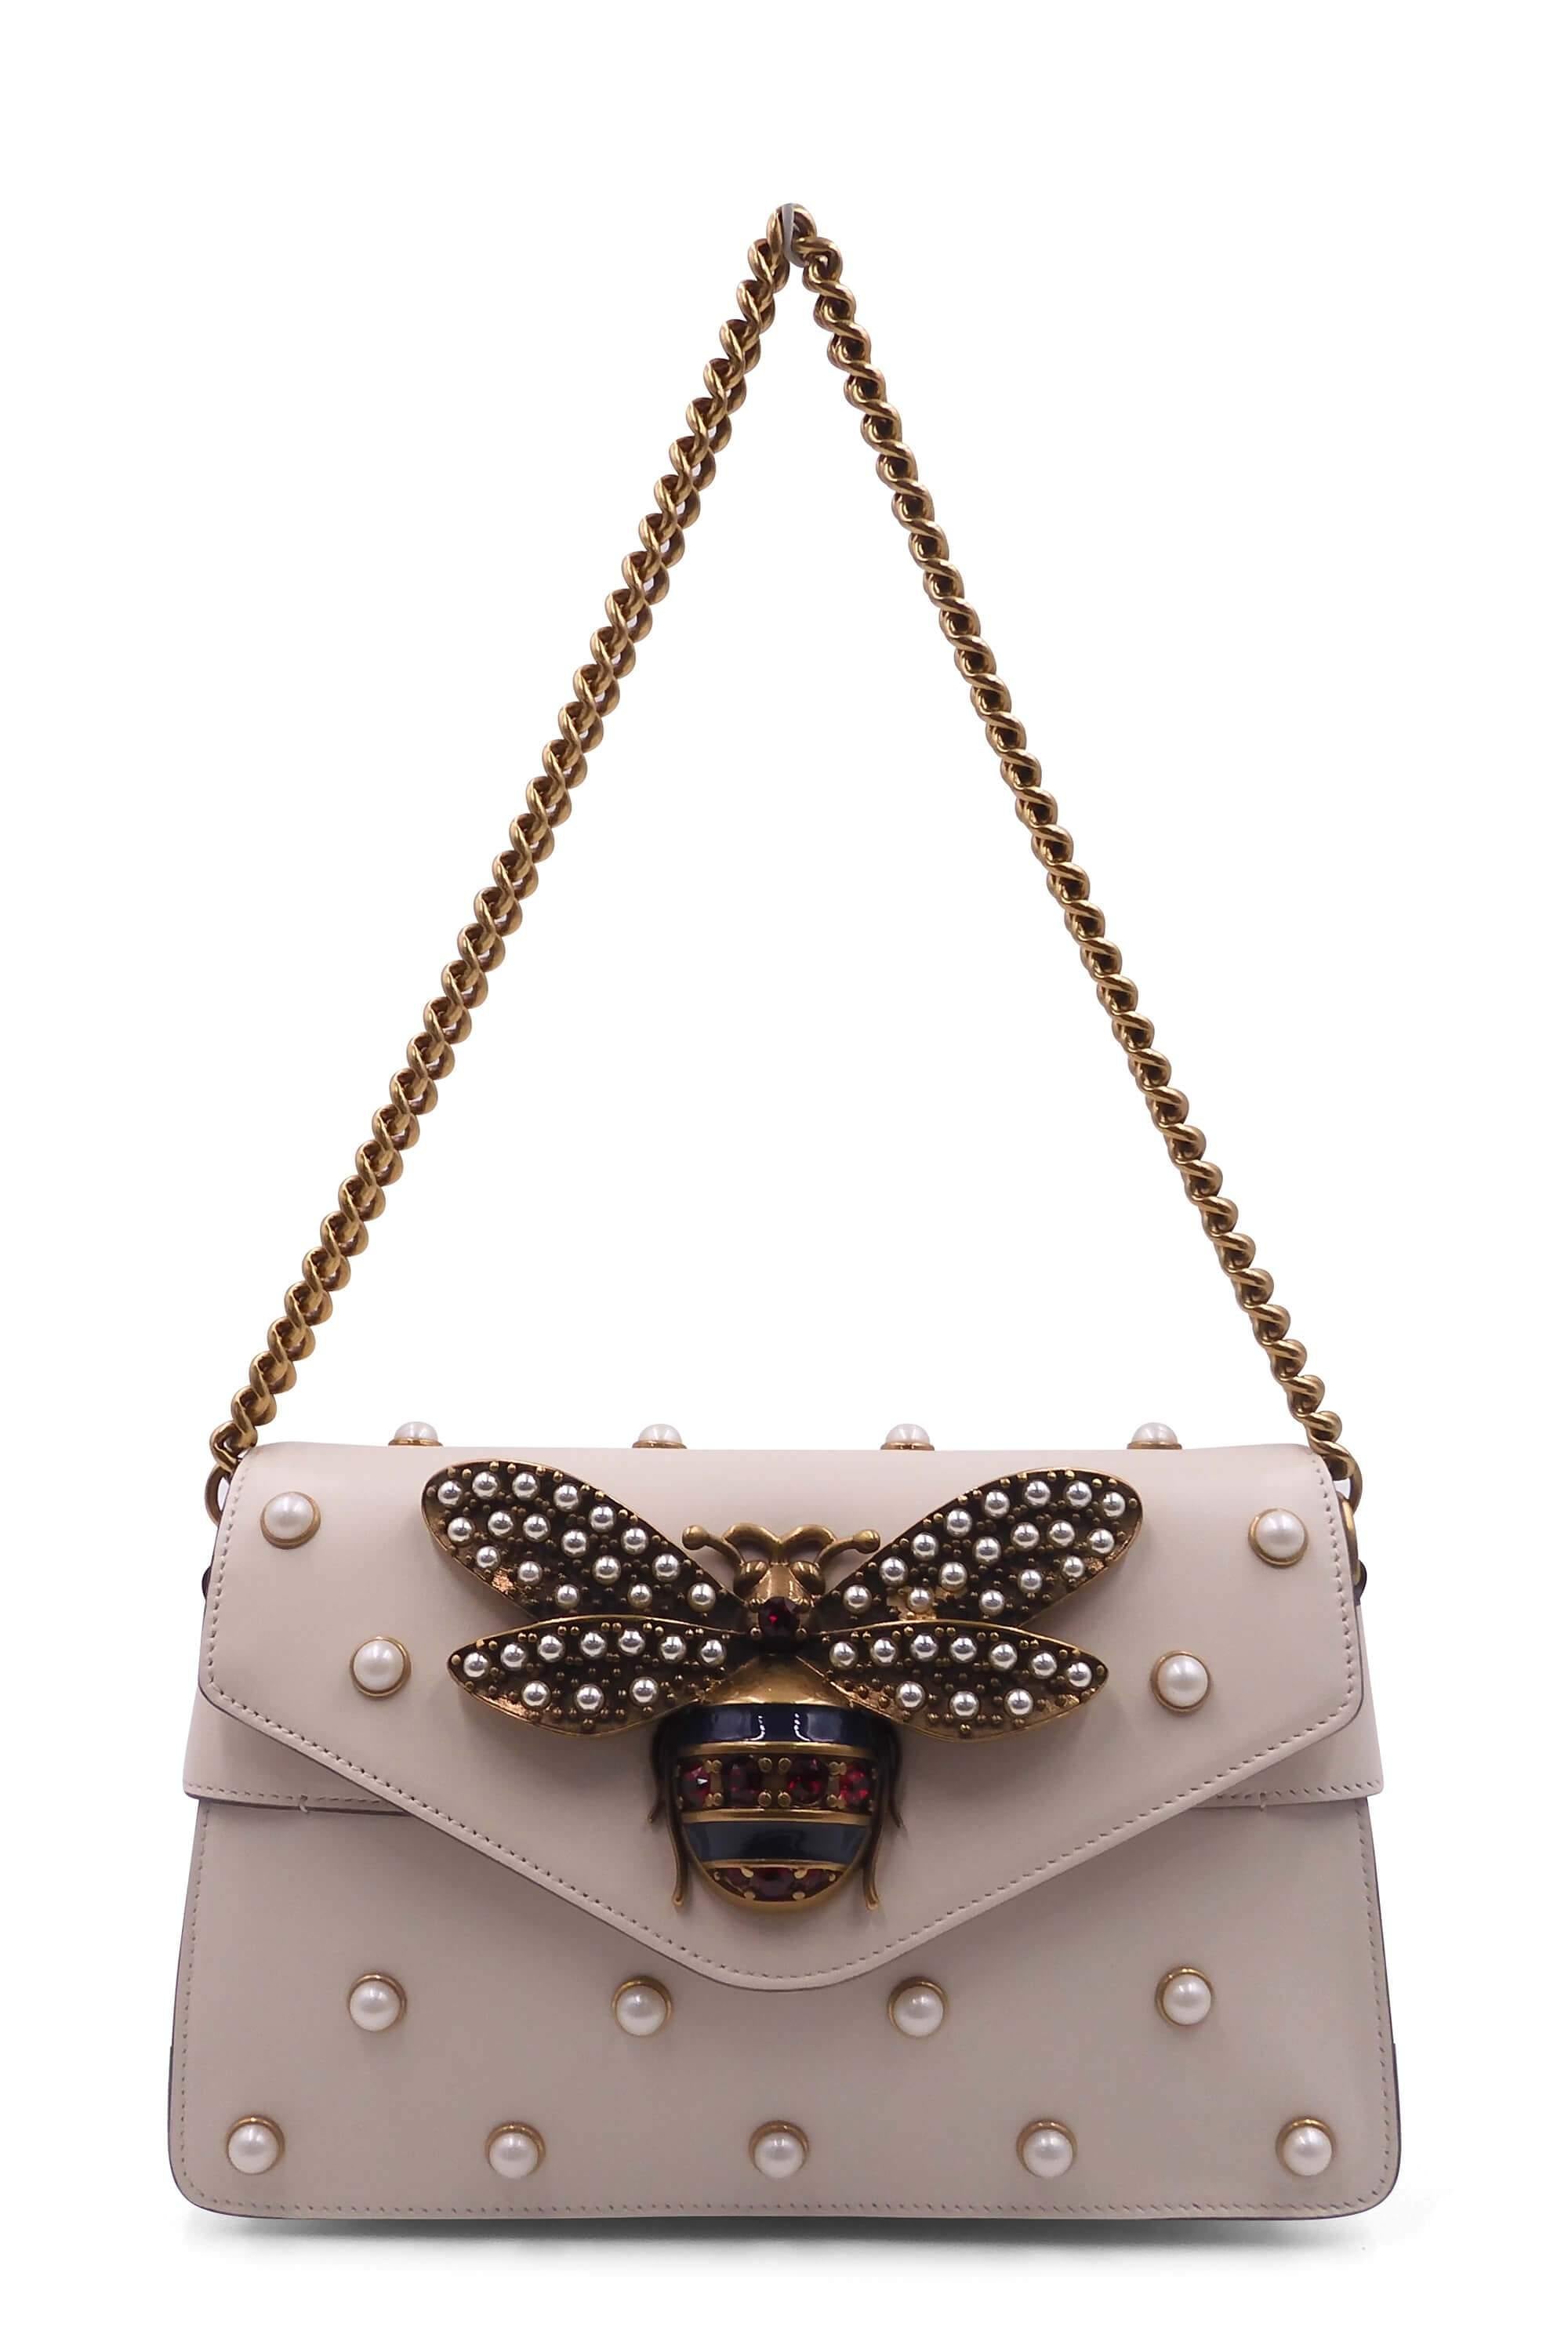 Gucci Bicolor GG Heart Charm Pochette Bag – THE CLOSET